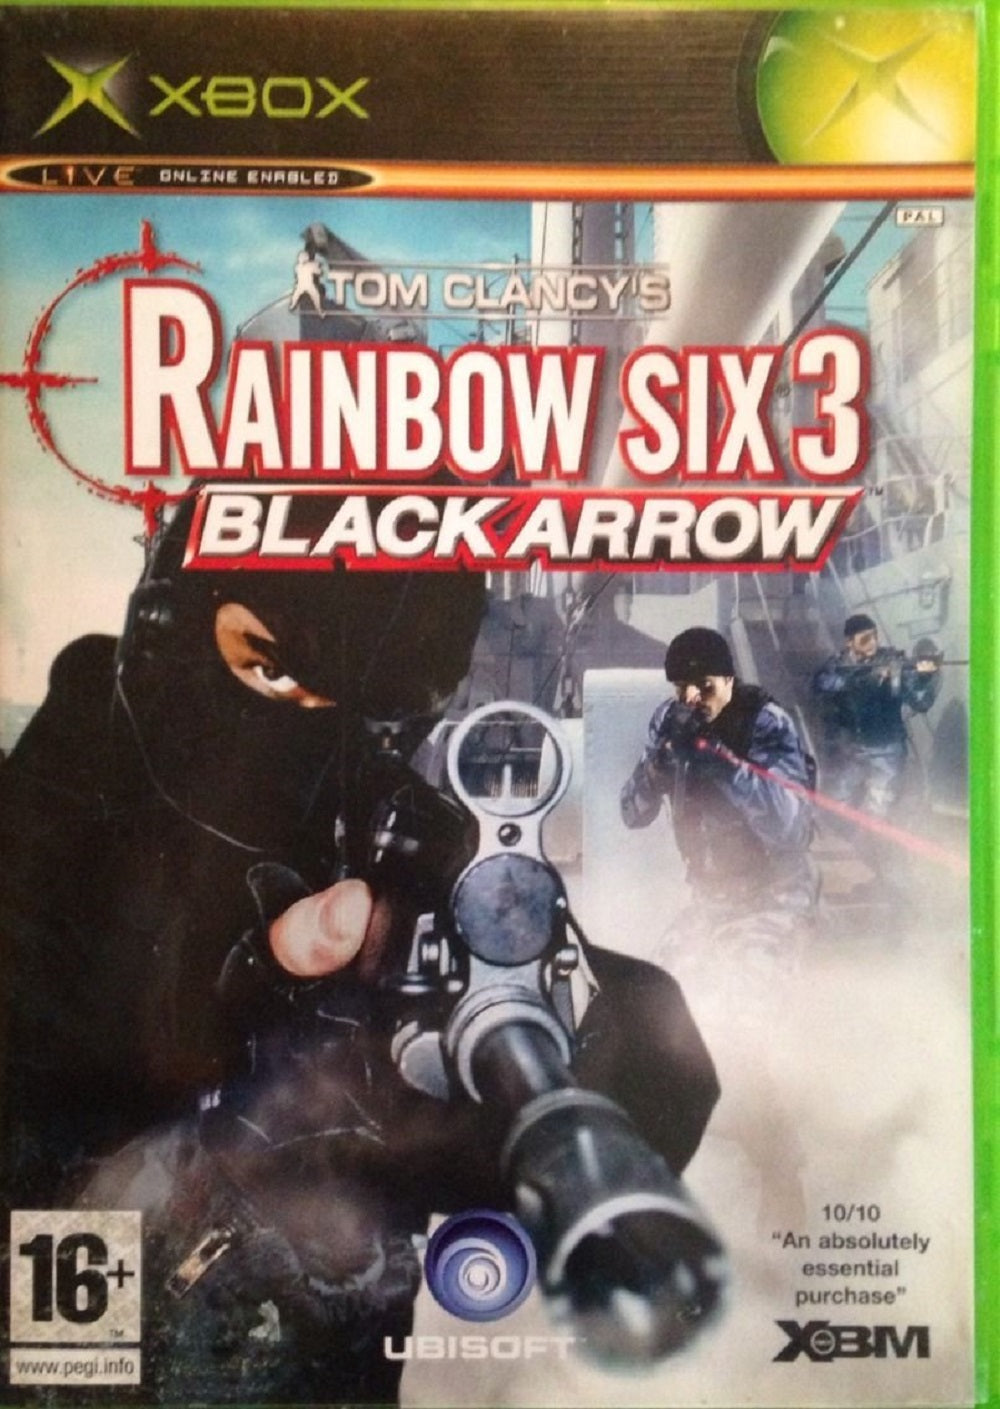 Rainbow Six 3: Black Arrow PAL for Microsoft XBOX from Ubisoft